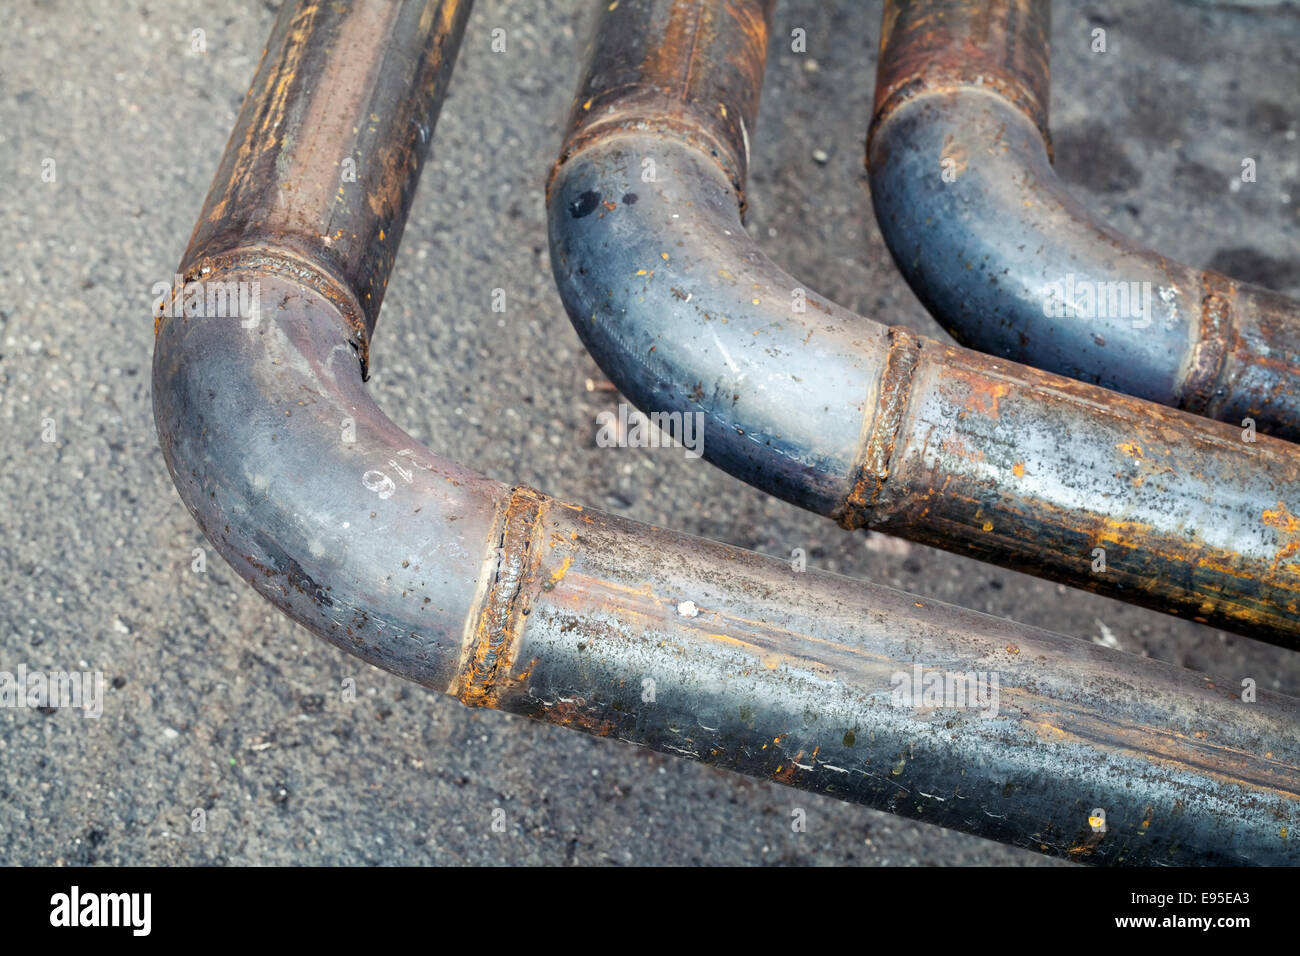 Bend of industrial outdoor steel pipeline over asphalt urban road Stock Photo